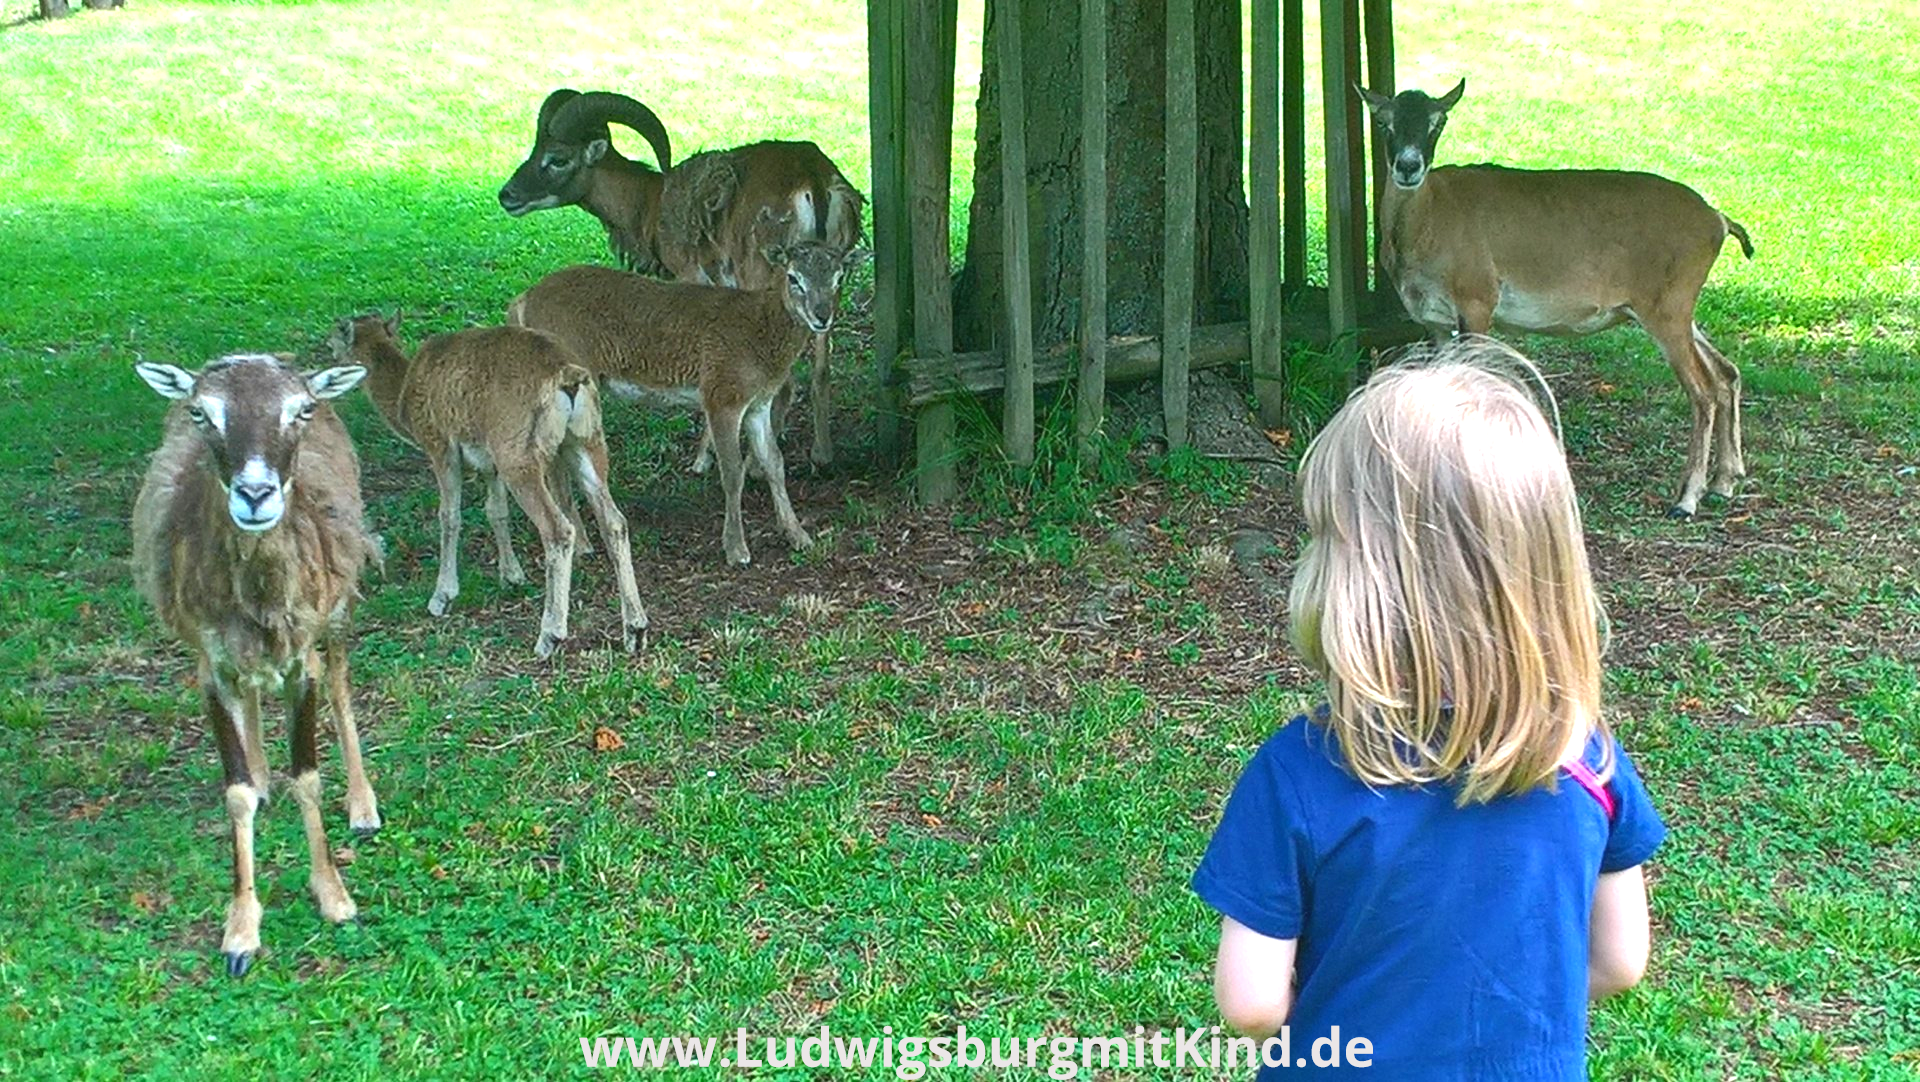 Ein Kind steht bei den Mufflons im Park Favorite Ludwigsburg und schaut den Lämmern zu.